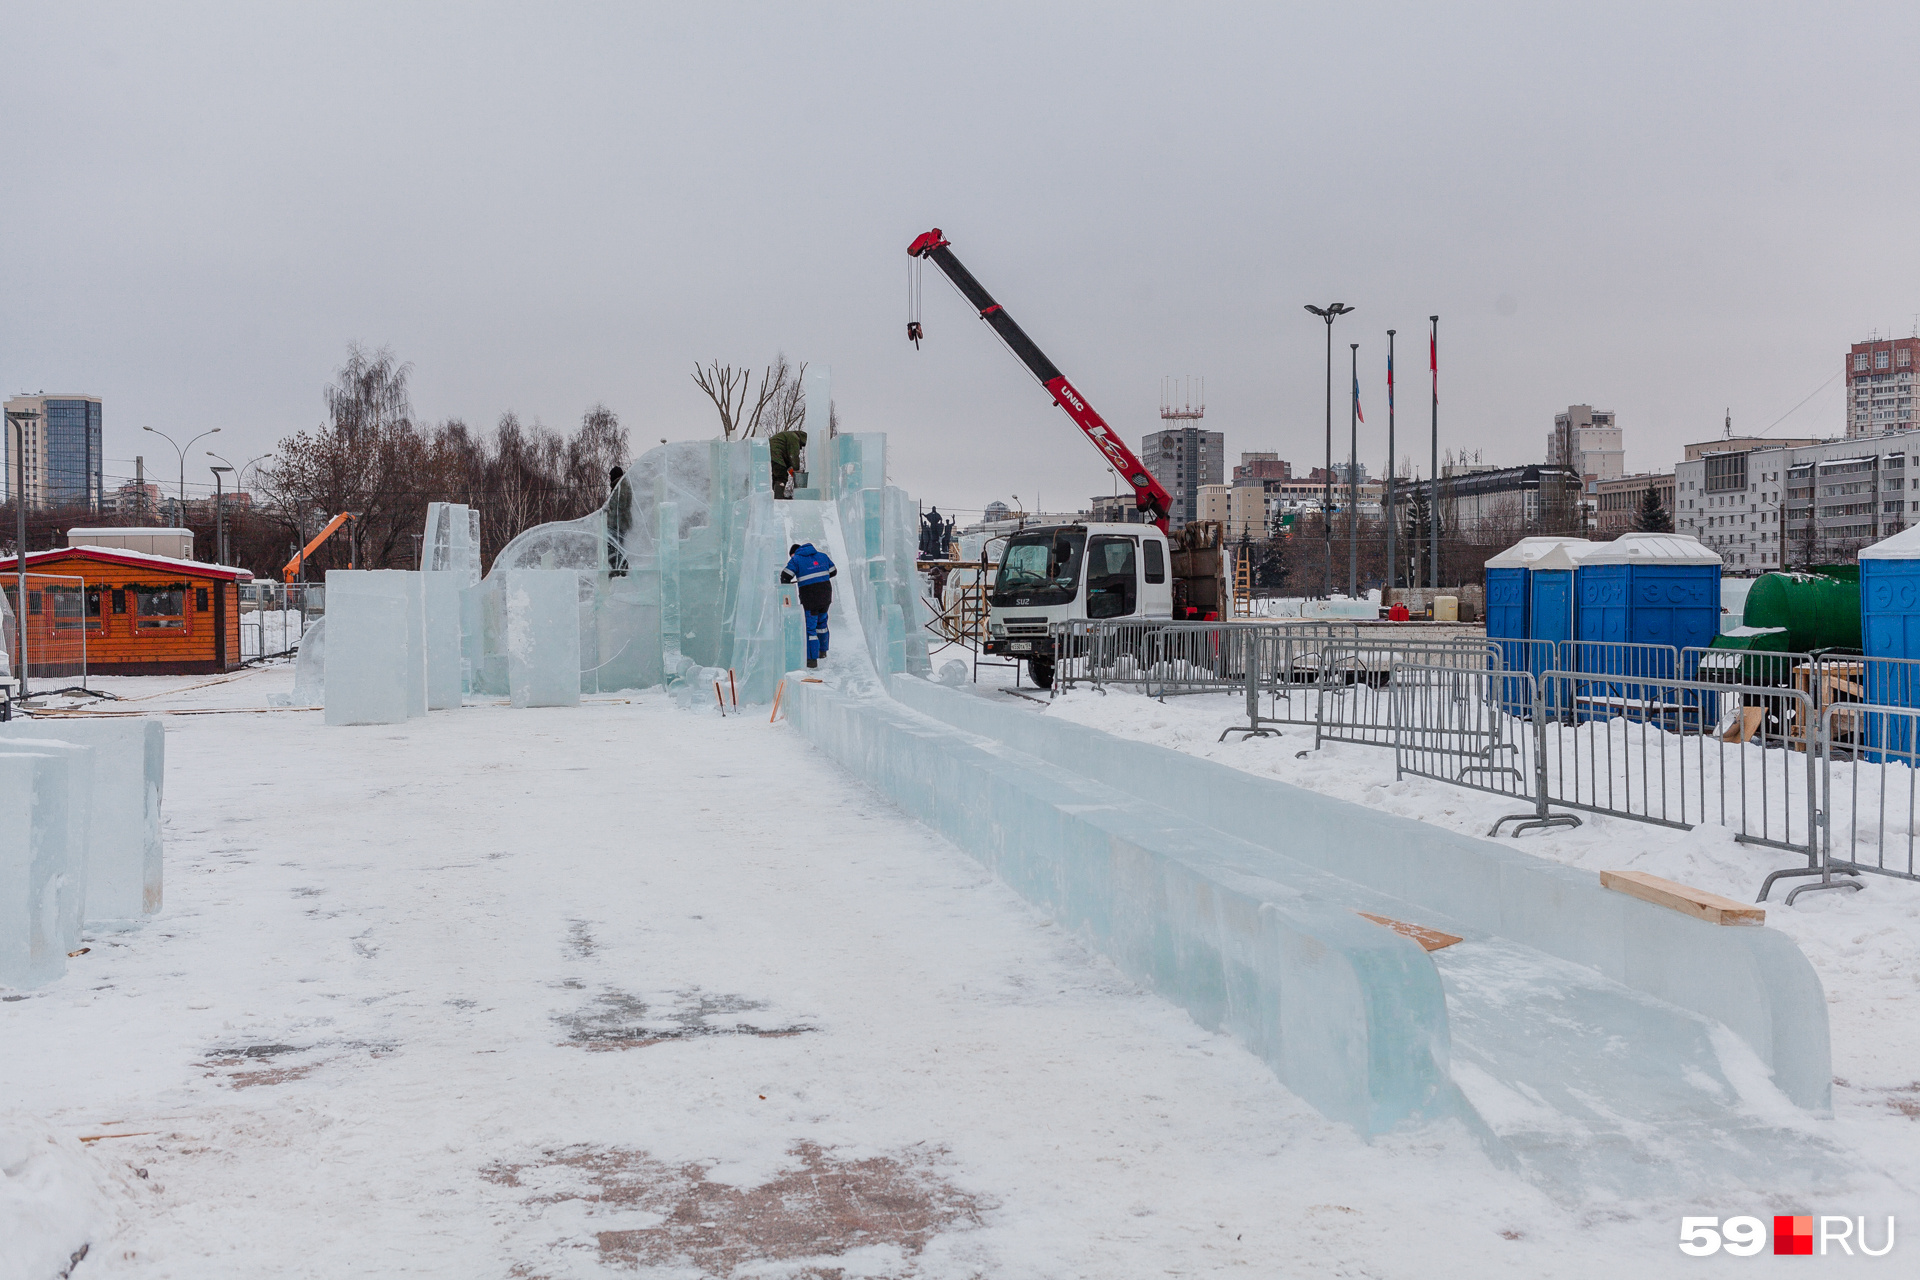 Длина скатов горок в ледяном городке до 3,5 метра